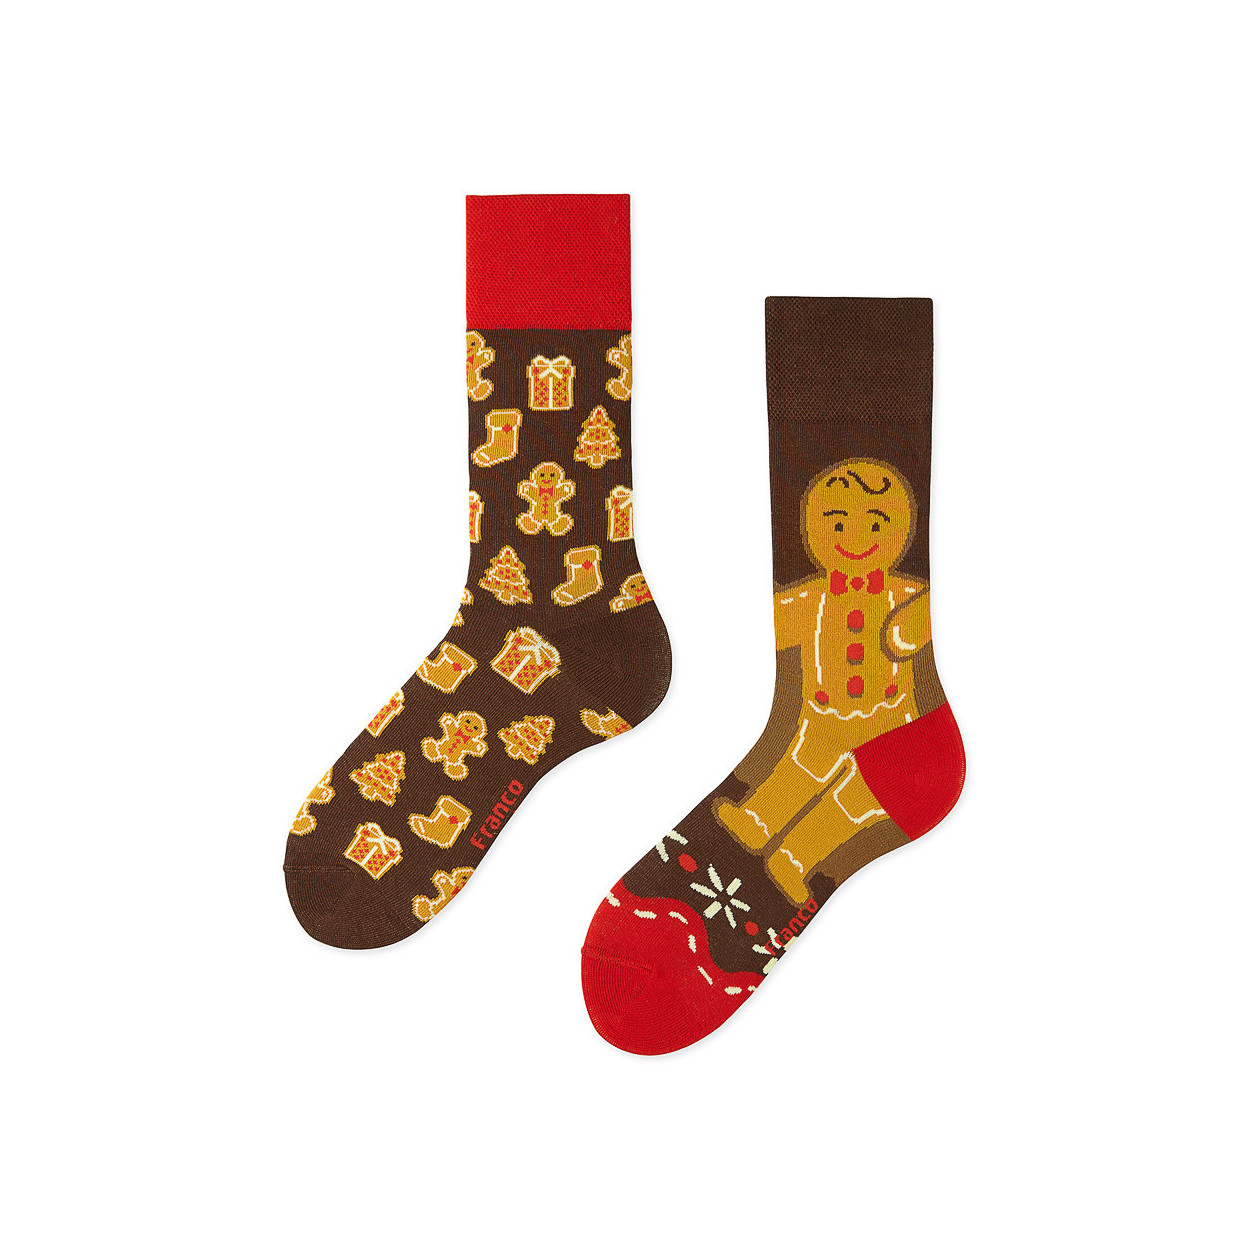 "Skarpetki z ciasteczkowym ludzikiem i świątecznymi pierniczkami - Franco Socks"